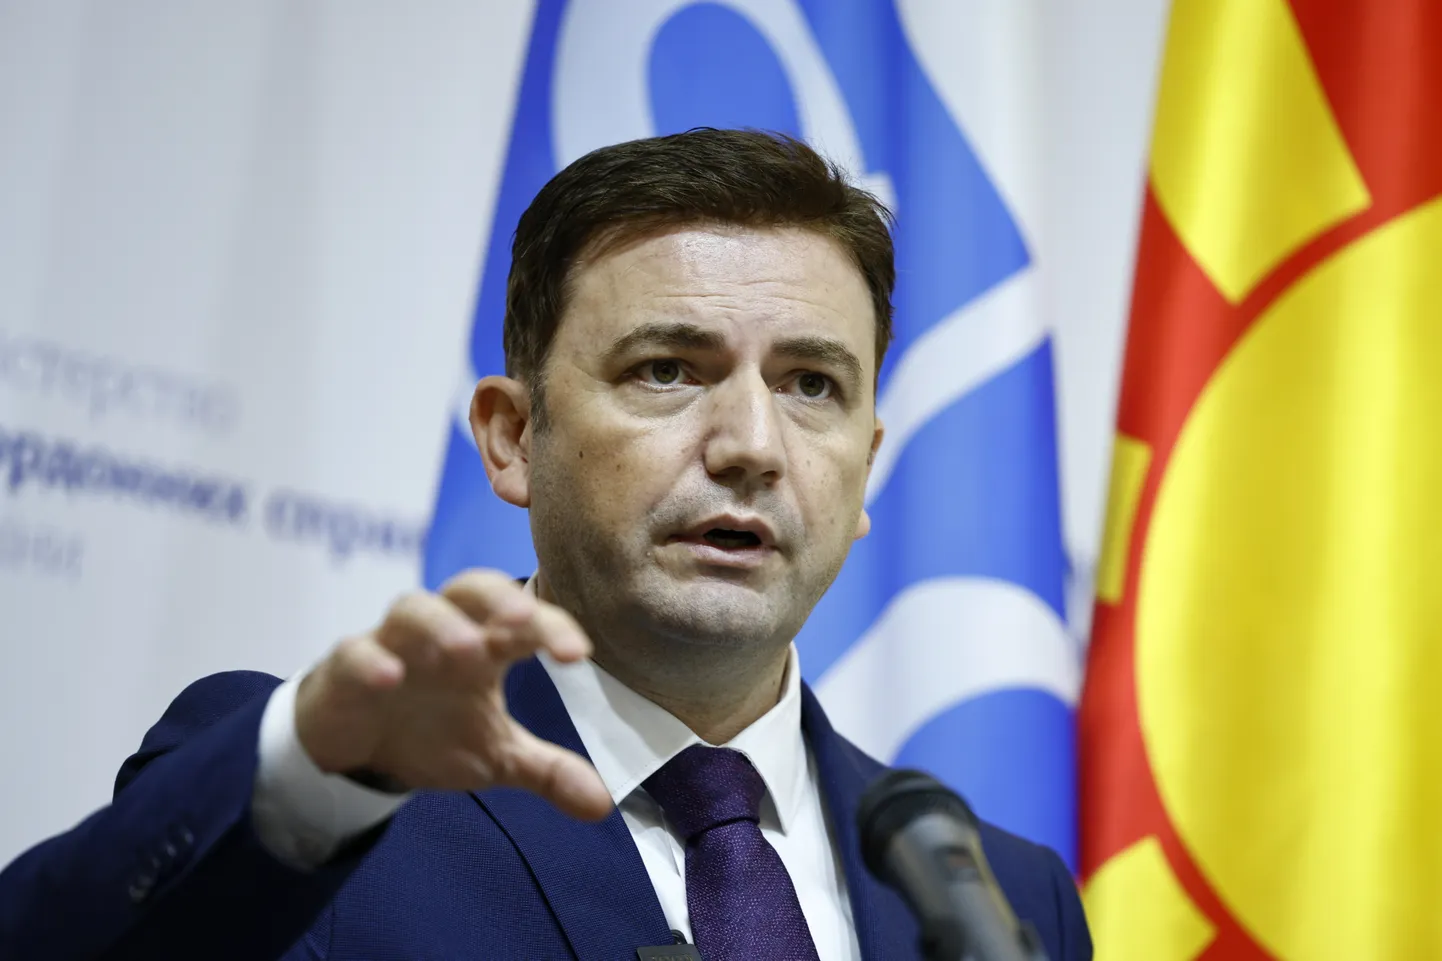 Буяр Османи, министр иностранных дел председательствующей в ОБСЕ Северной Македонии.